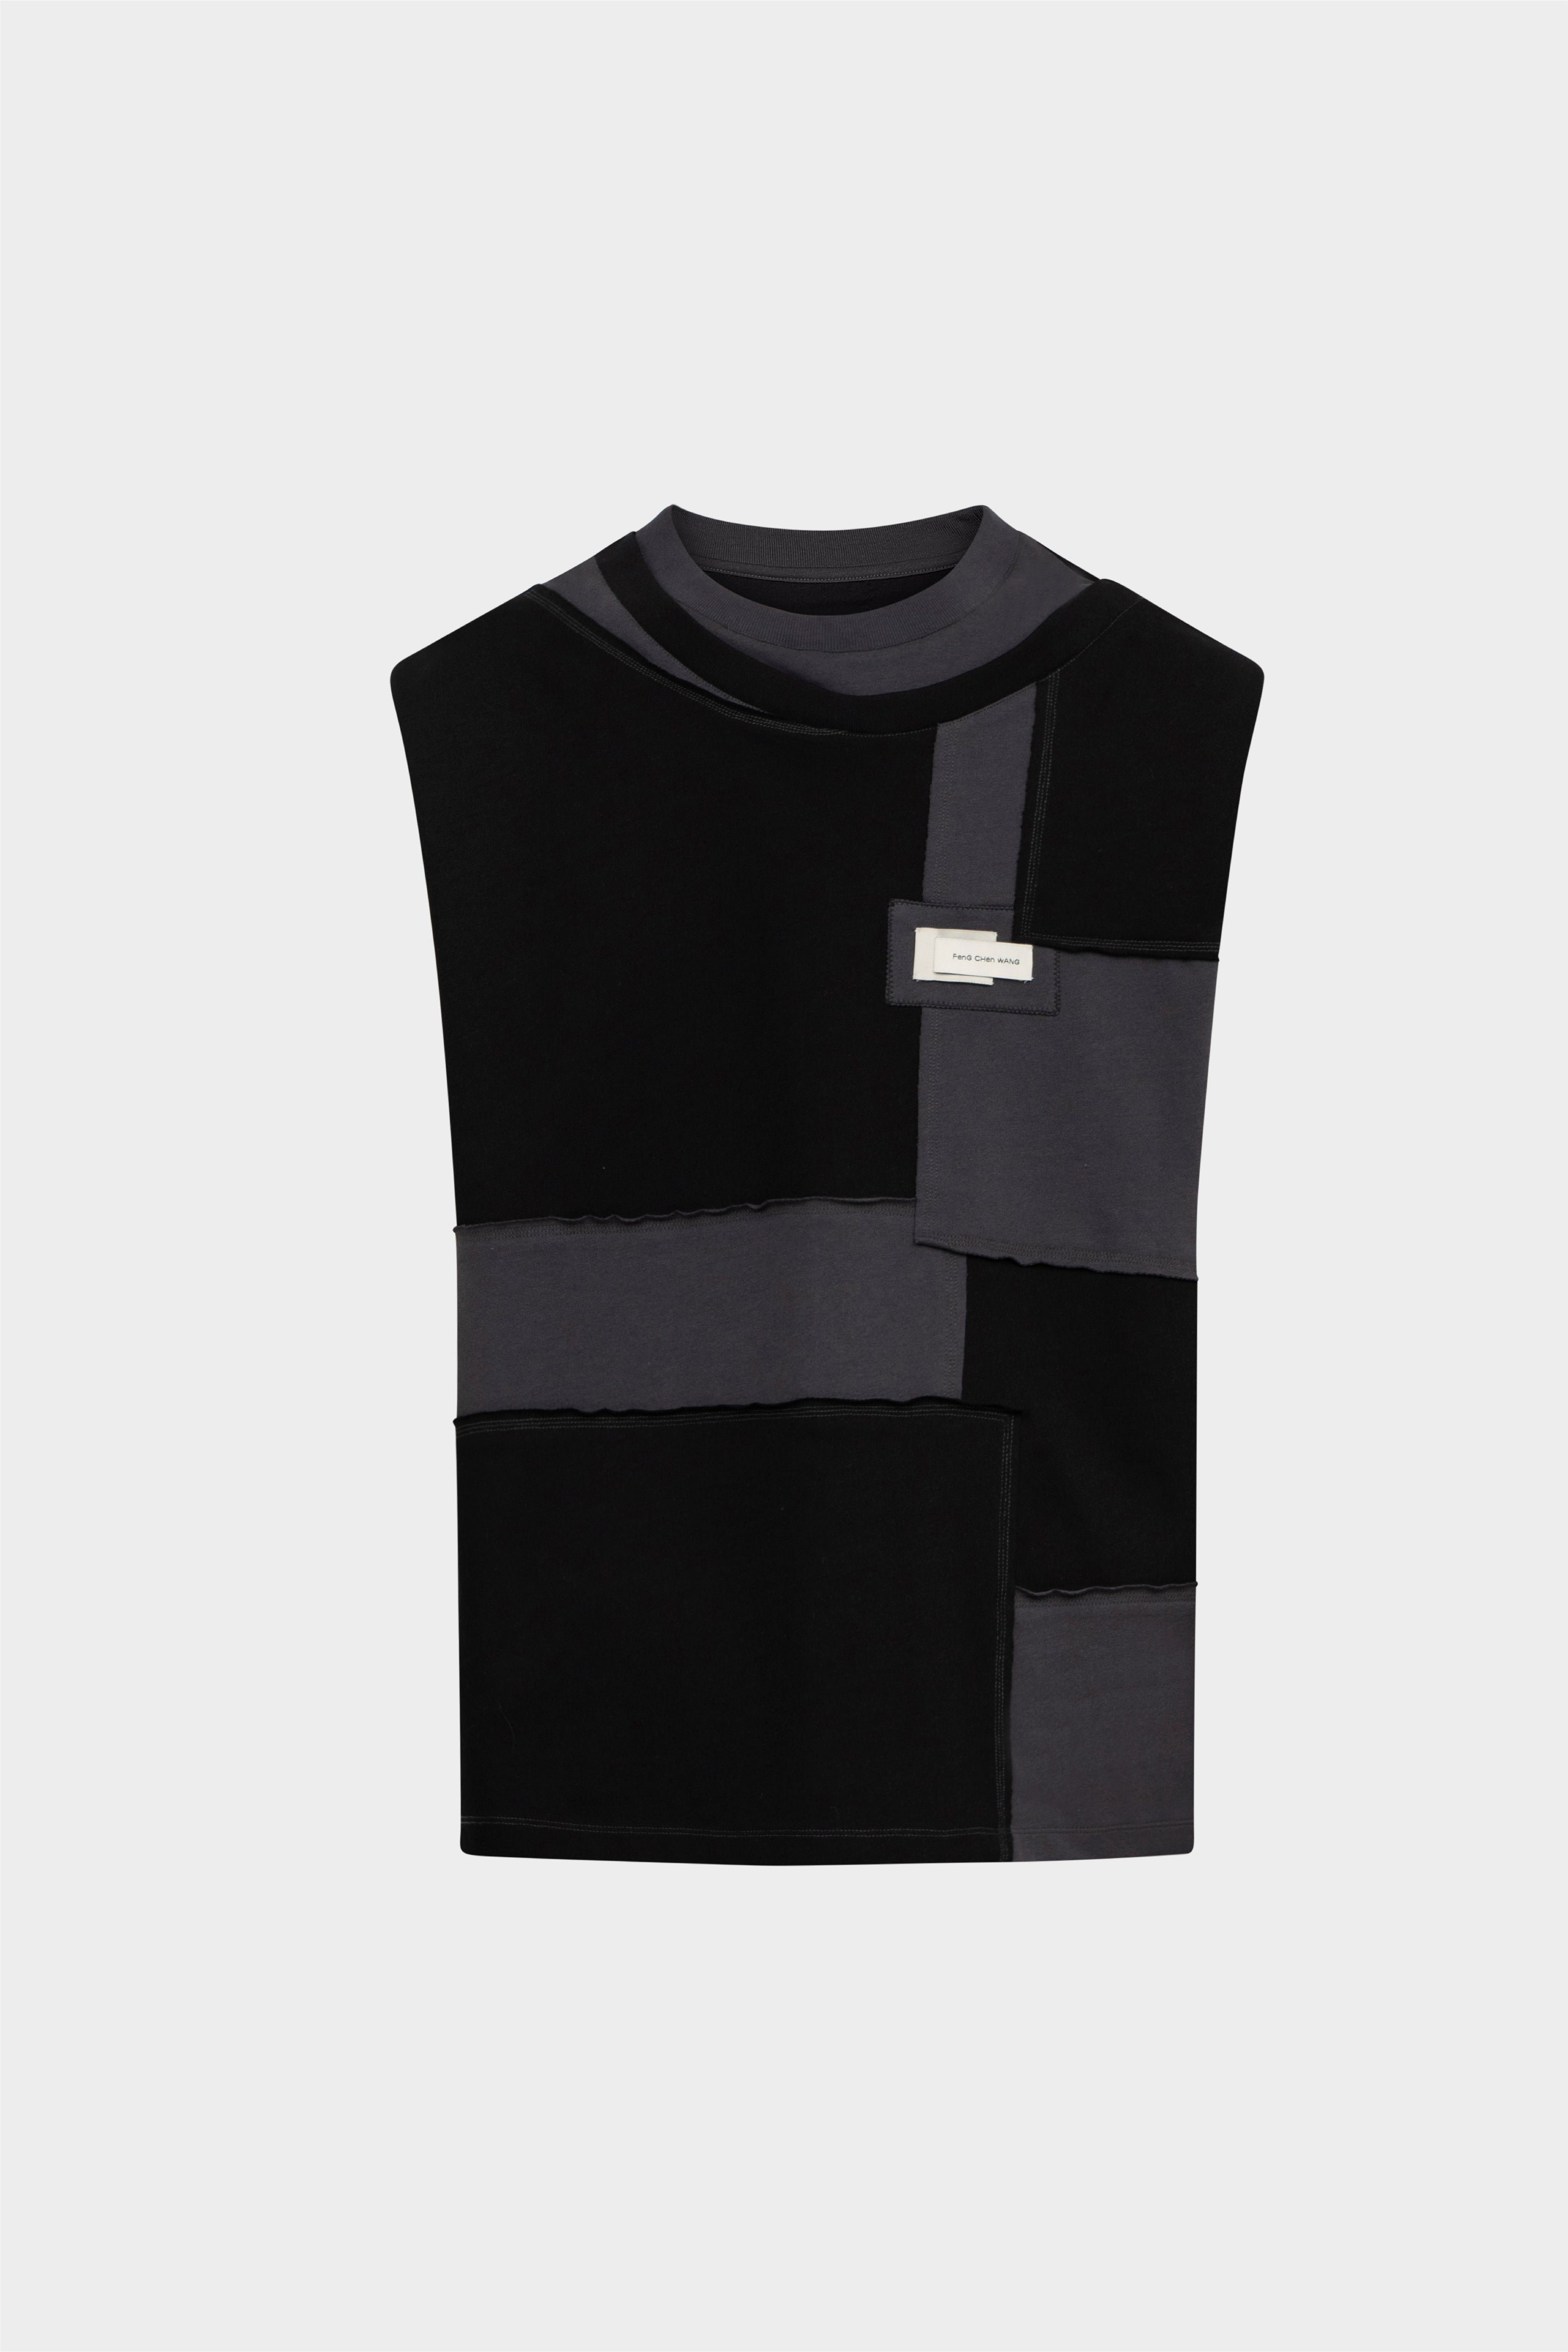 Selectshop FRAME - FENG CHEN WANG Deconstructed Patch Vest Outerwear Concept Store Dubai